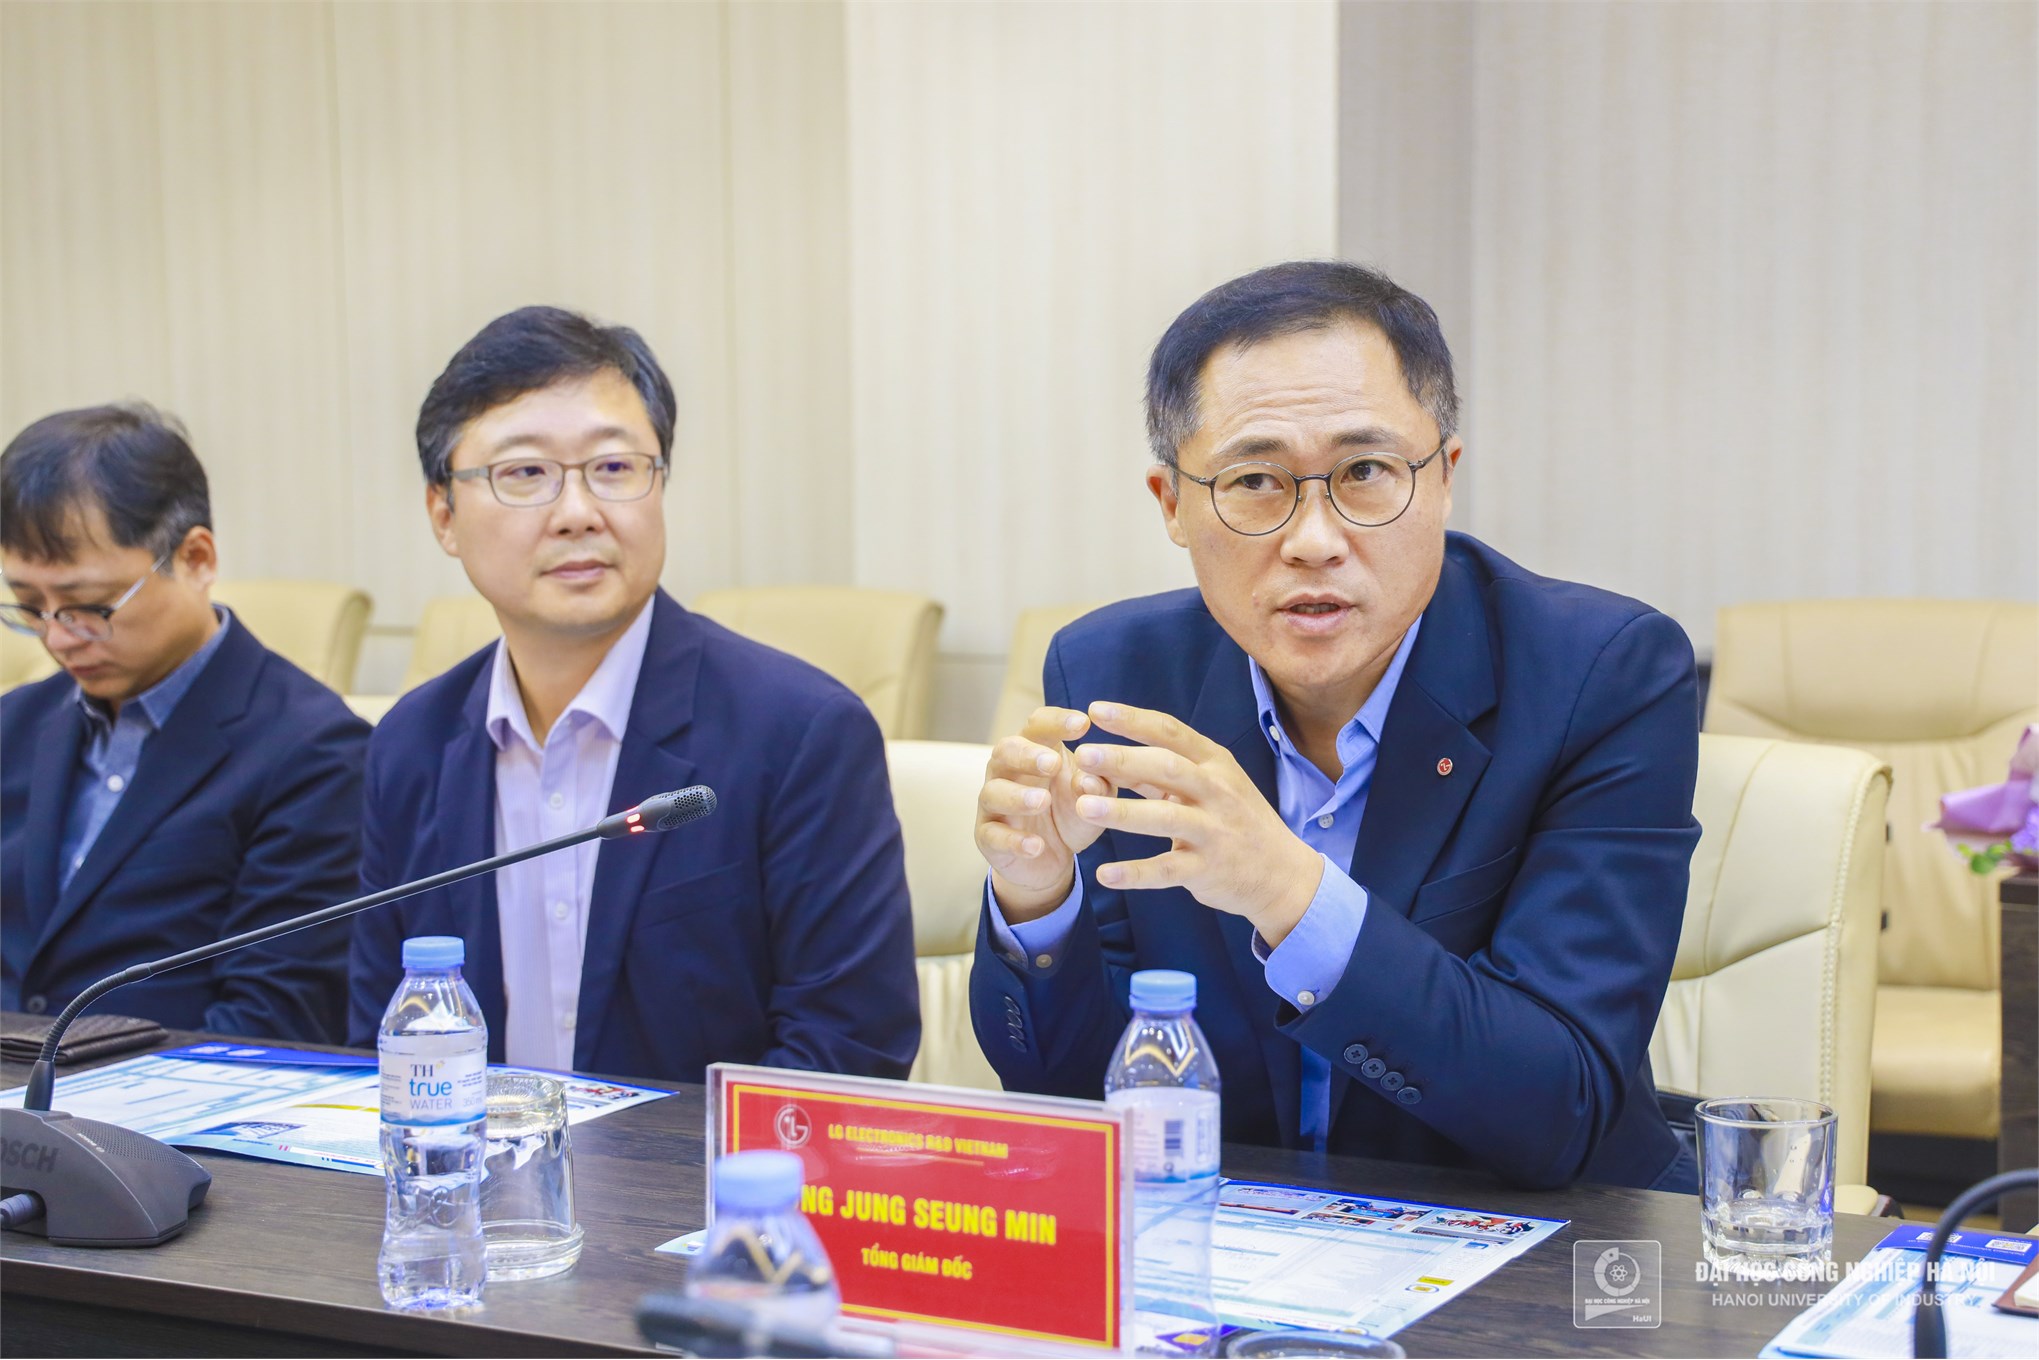 Ký kết Thỏa thuận hợp tác với Công ty TNHH LG Electronics Development Việt Nam và Công ty TNHH LG CNS Việt Nam